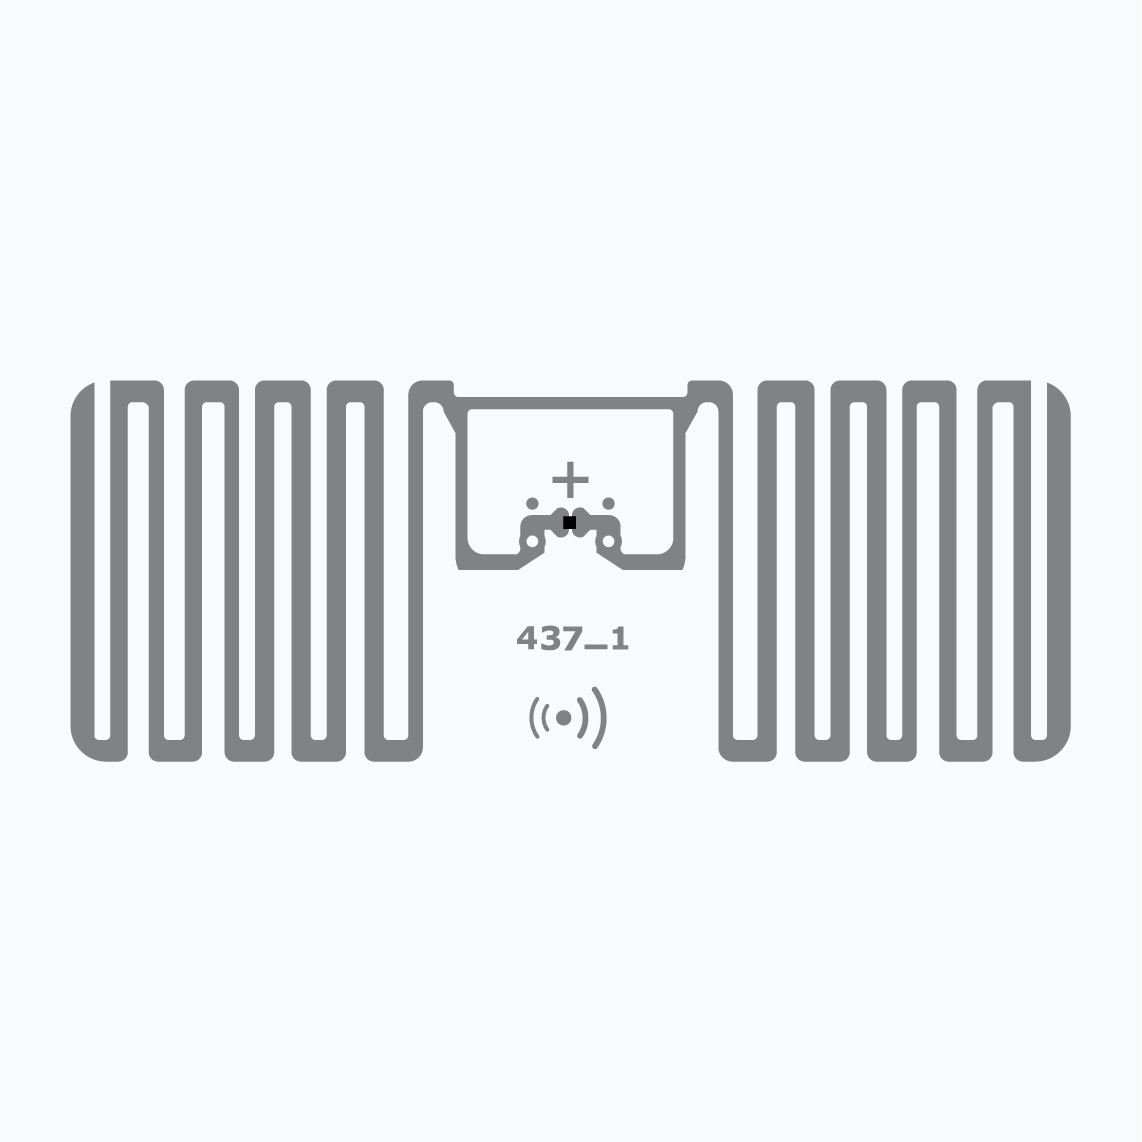 UHF RFID Inlay： Miniweb，Monza R6-P